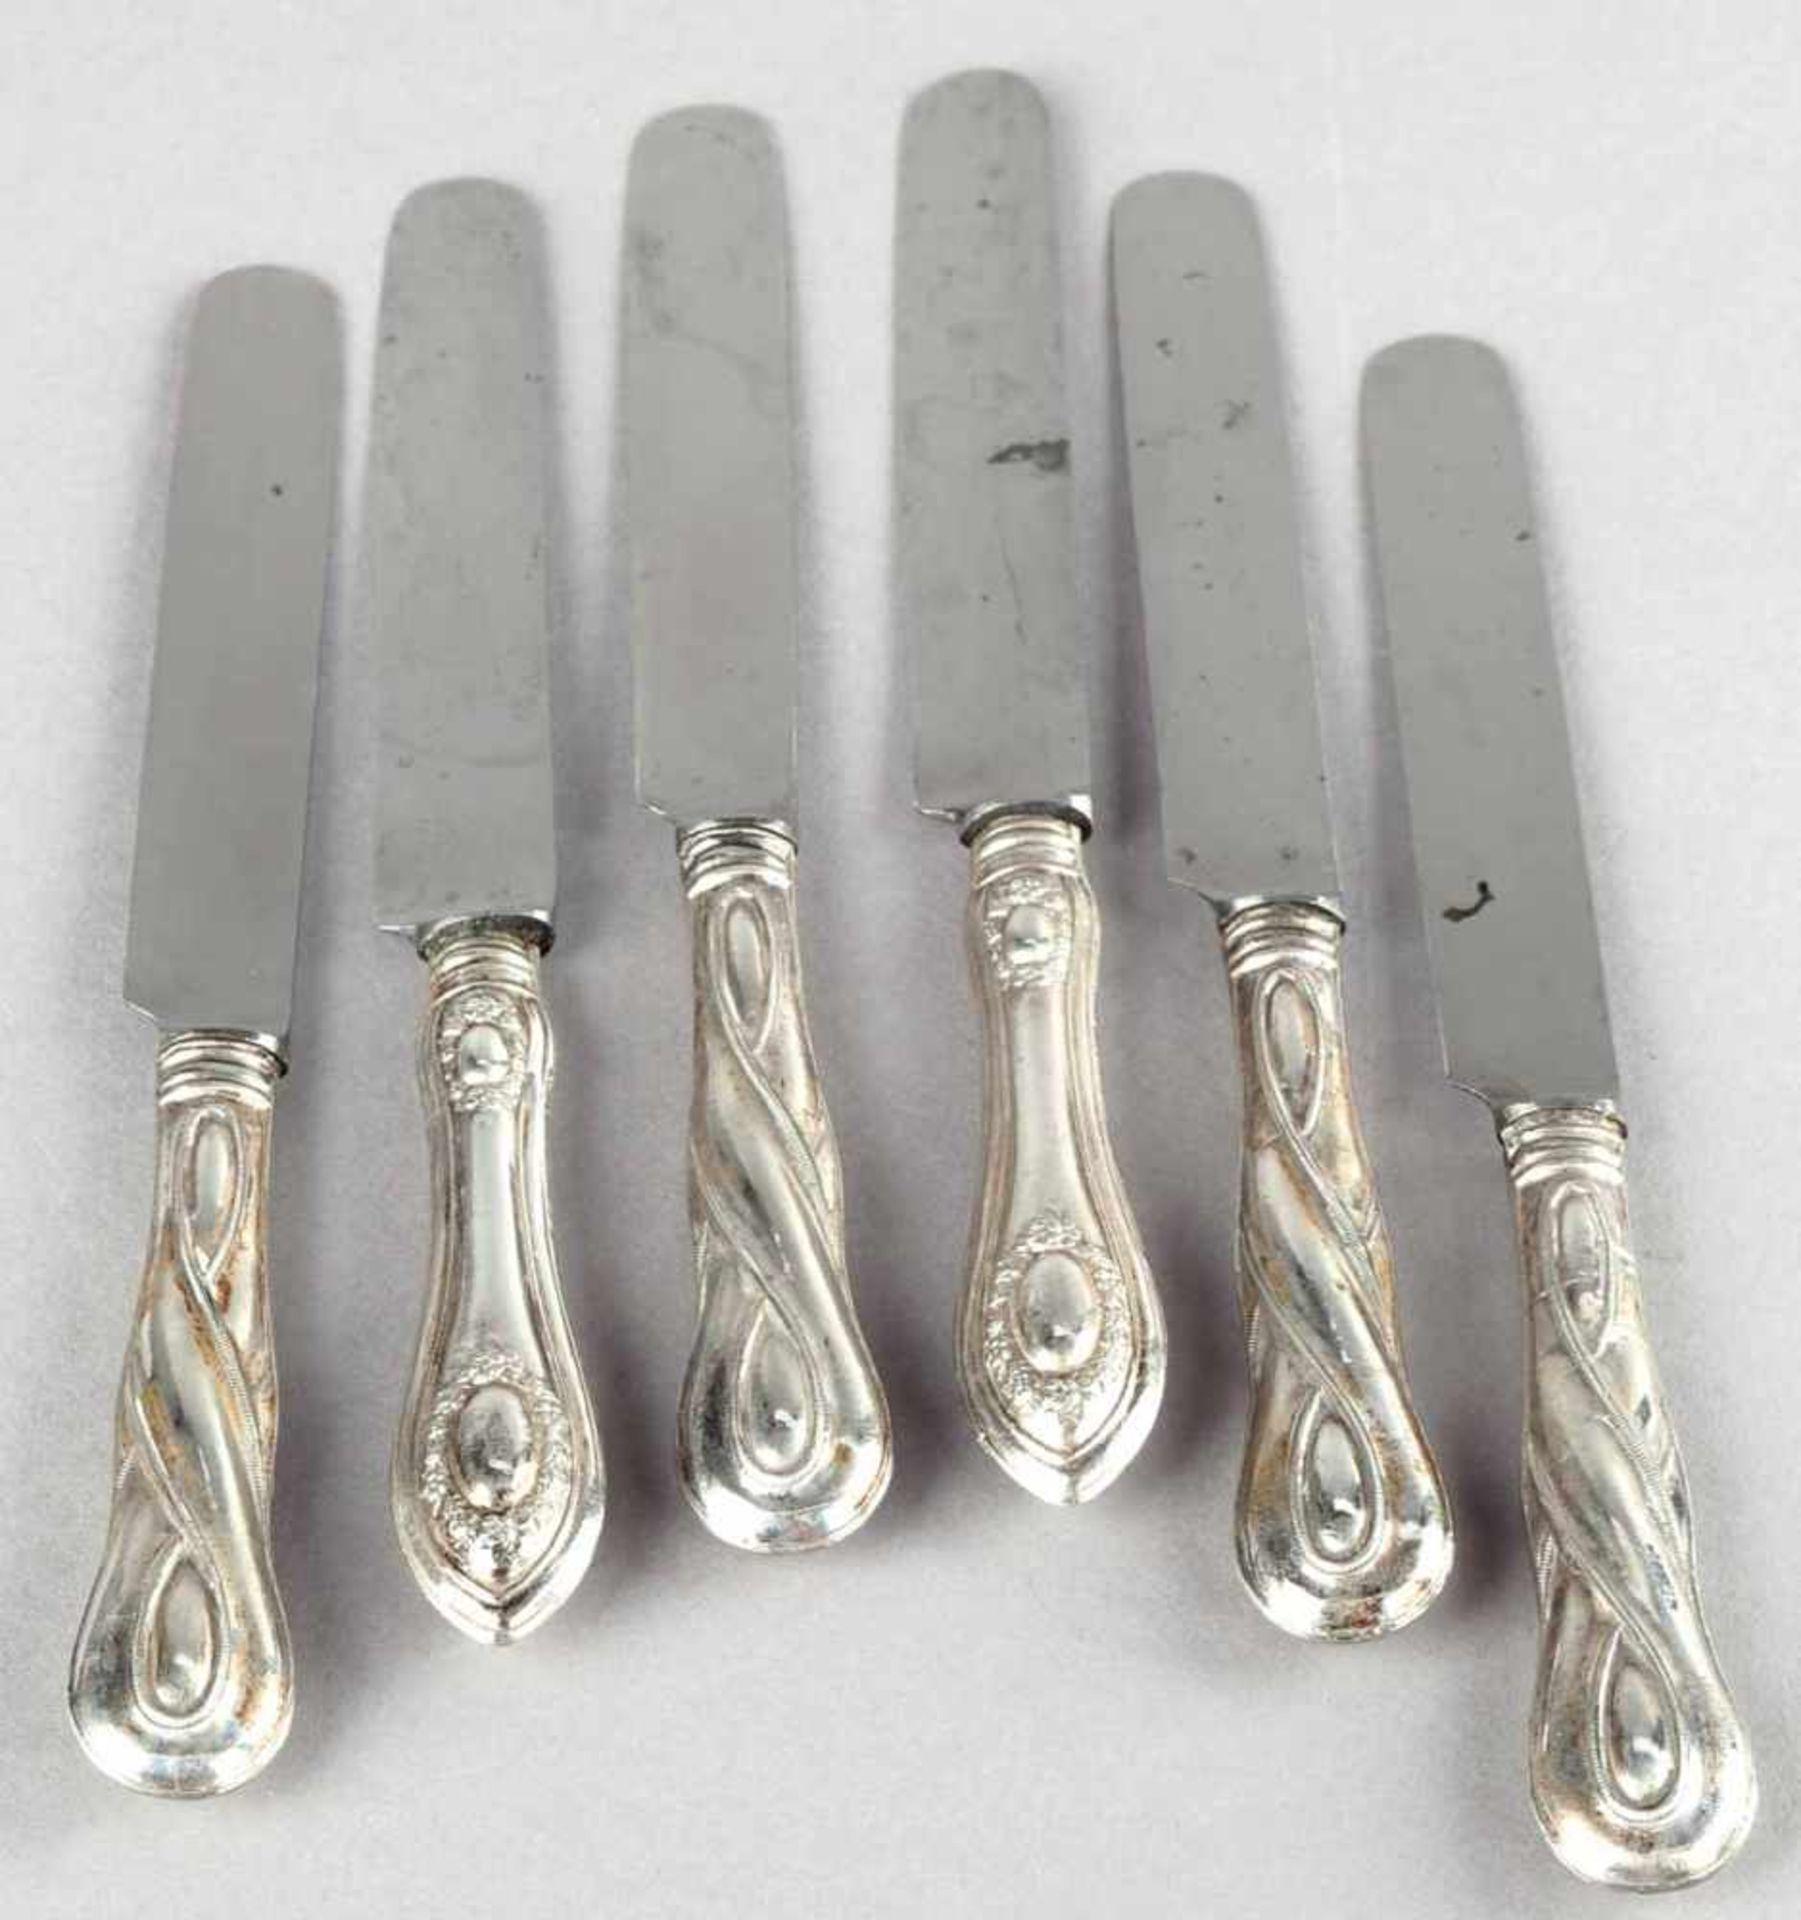 Zwei Sätze Vorspeisenmesser Silber geprüft, ungemarkt, je 6 Messer mit bauchigen Griffen und - Bild 2 aus 2